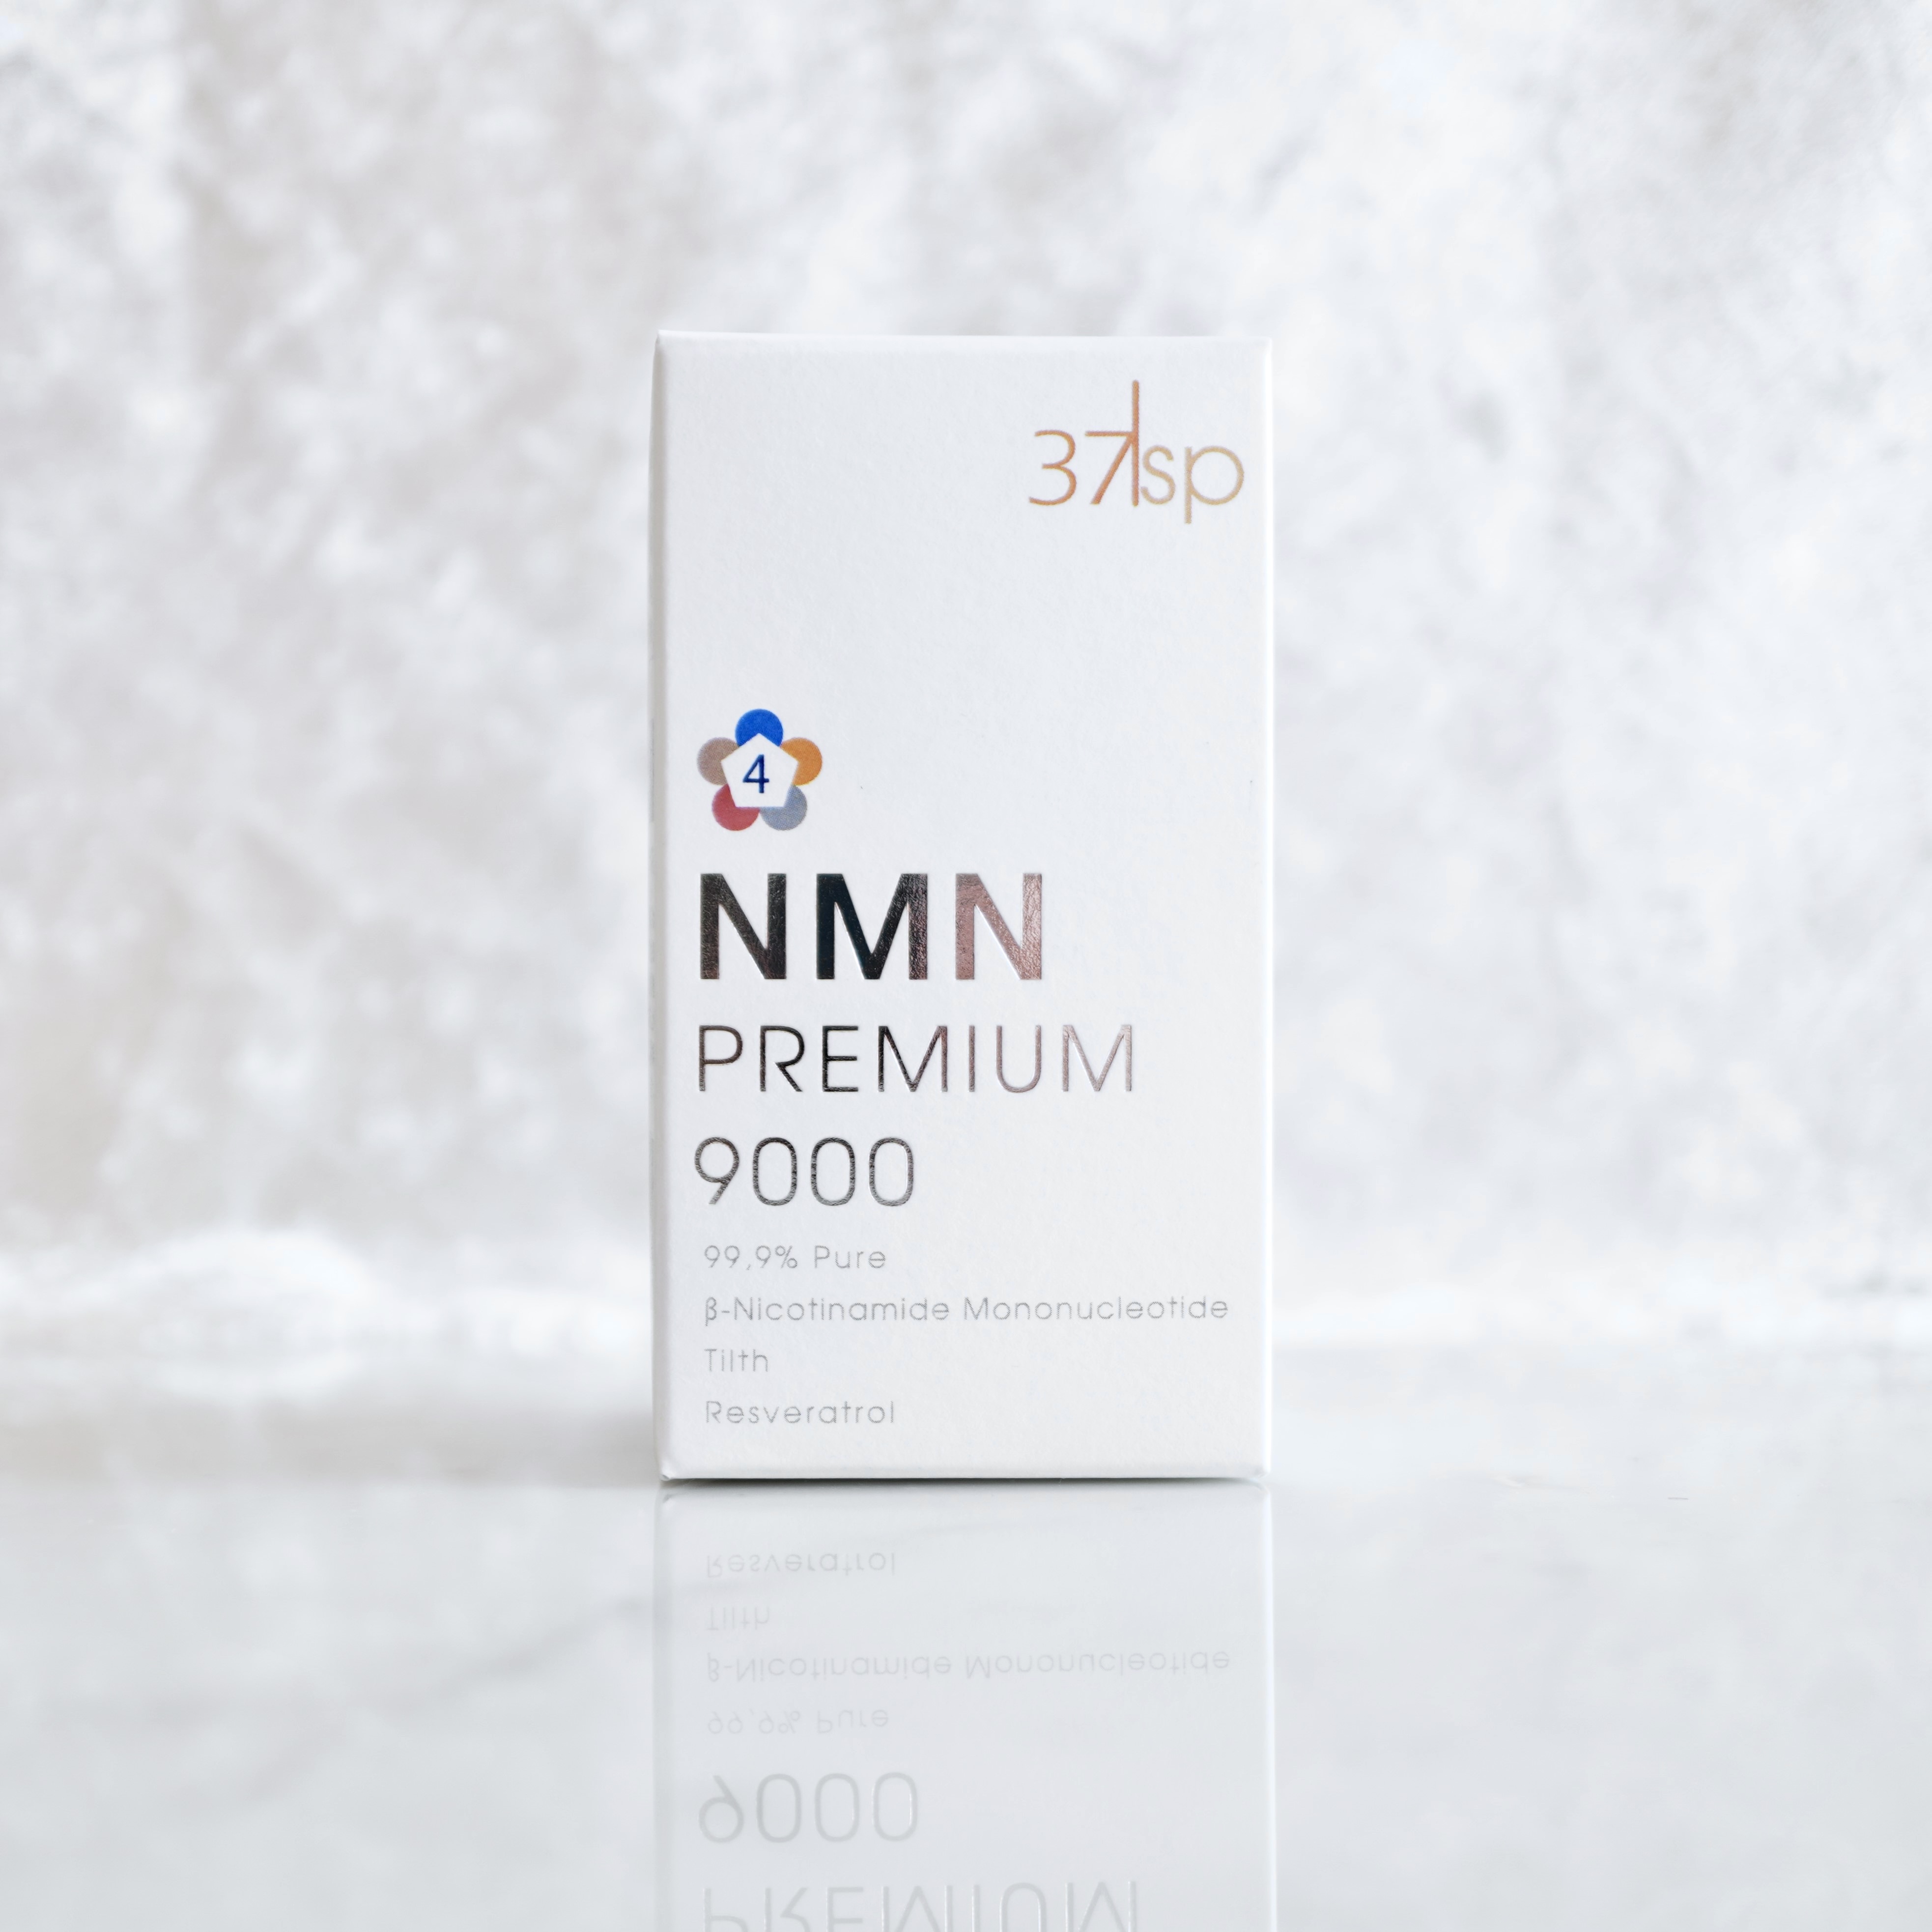 37sp NMNプレミアム – 37℃ online shop